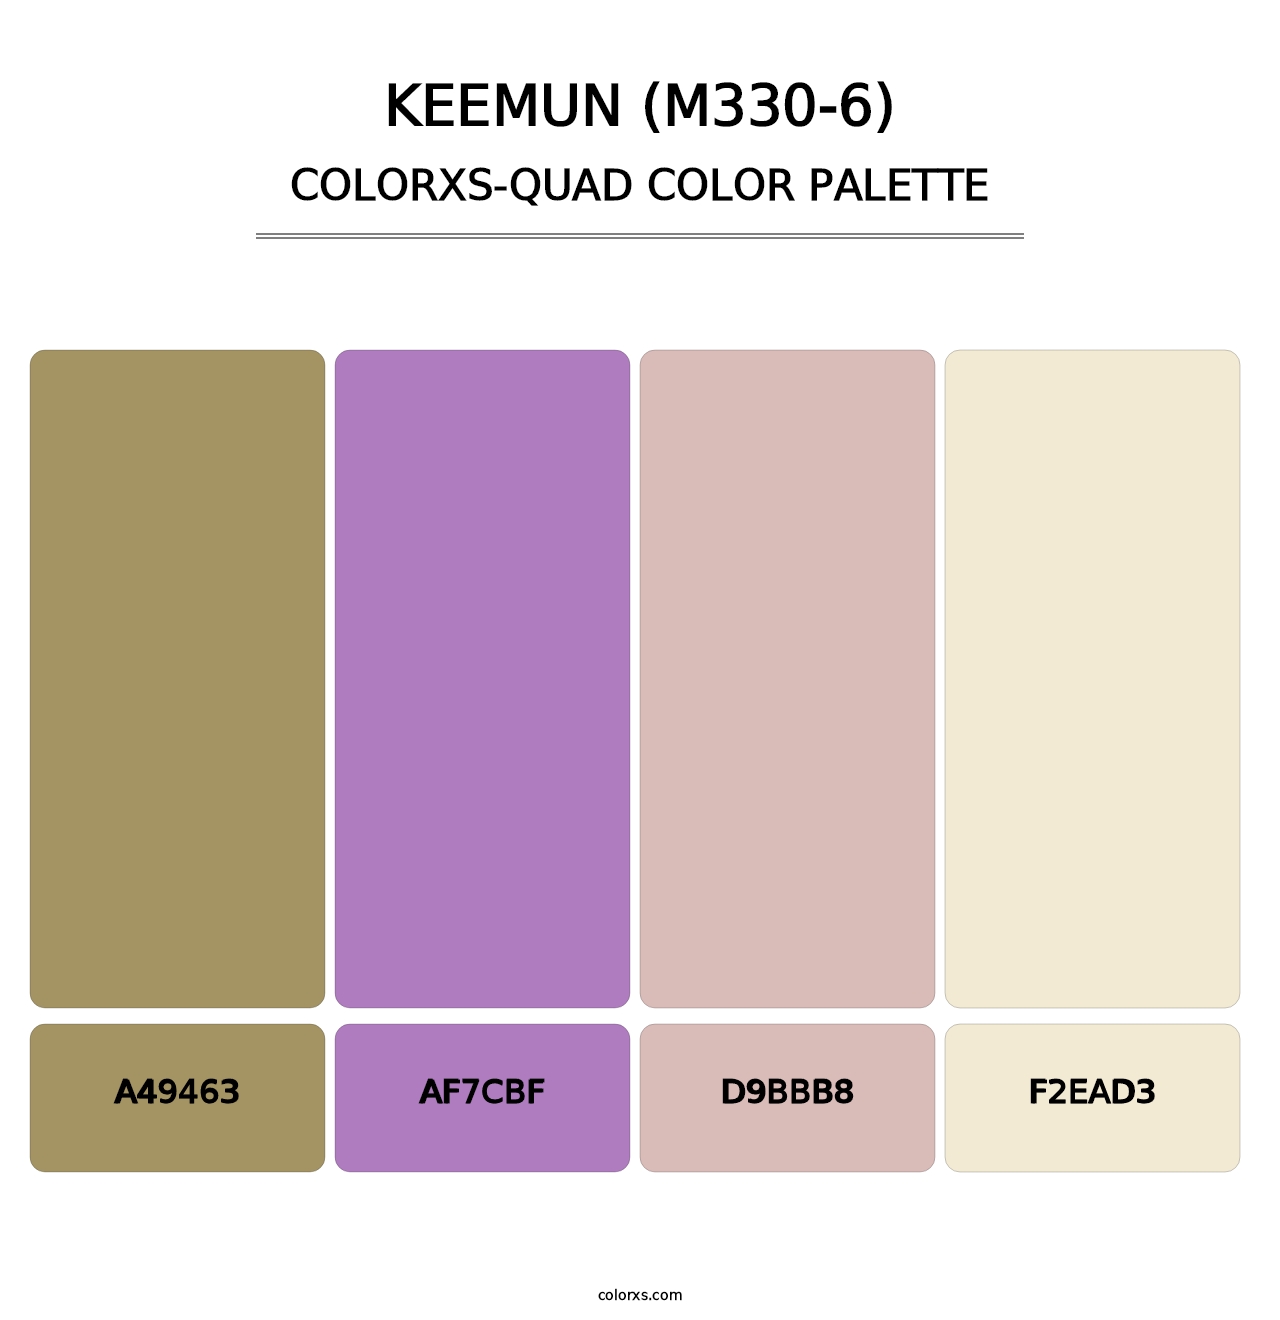 Keemun (M330-6) - Colorxs Quad Palette